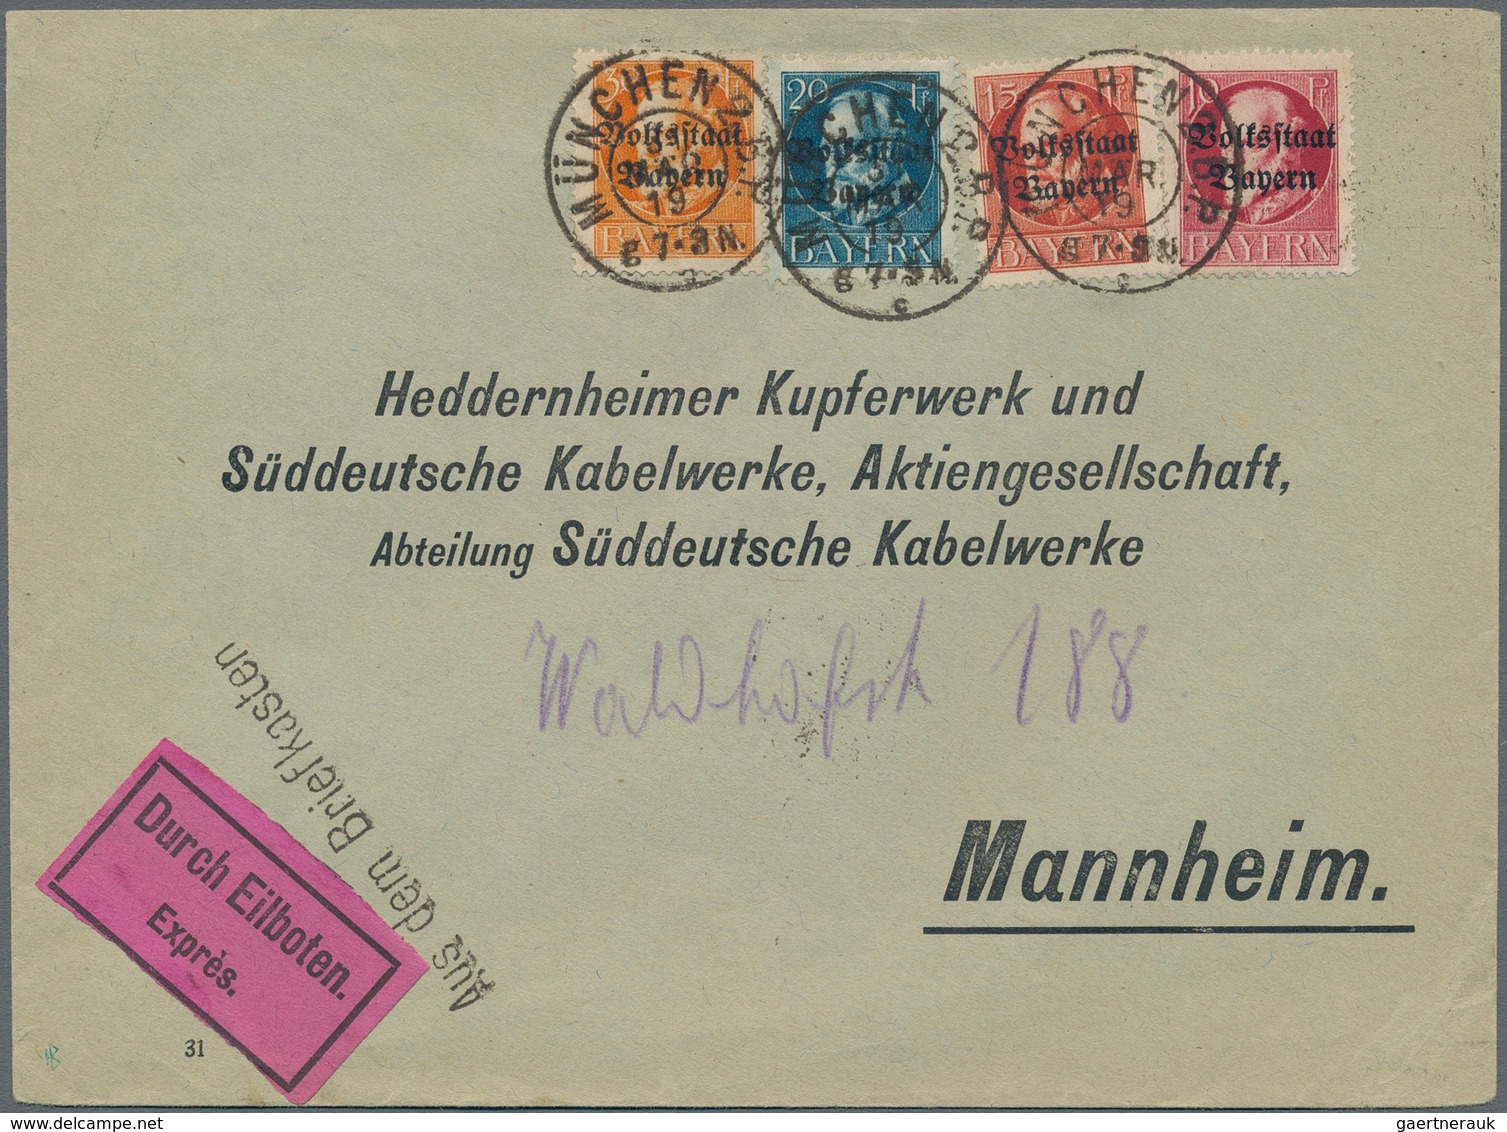 Deutsches Reich - Stempel: 1872/1940, AUS DEM BRIEFKASTEN, Konvolut mit ca.30 Briefen, Karten und Ga